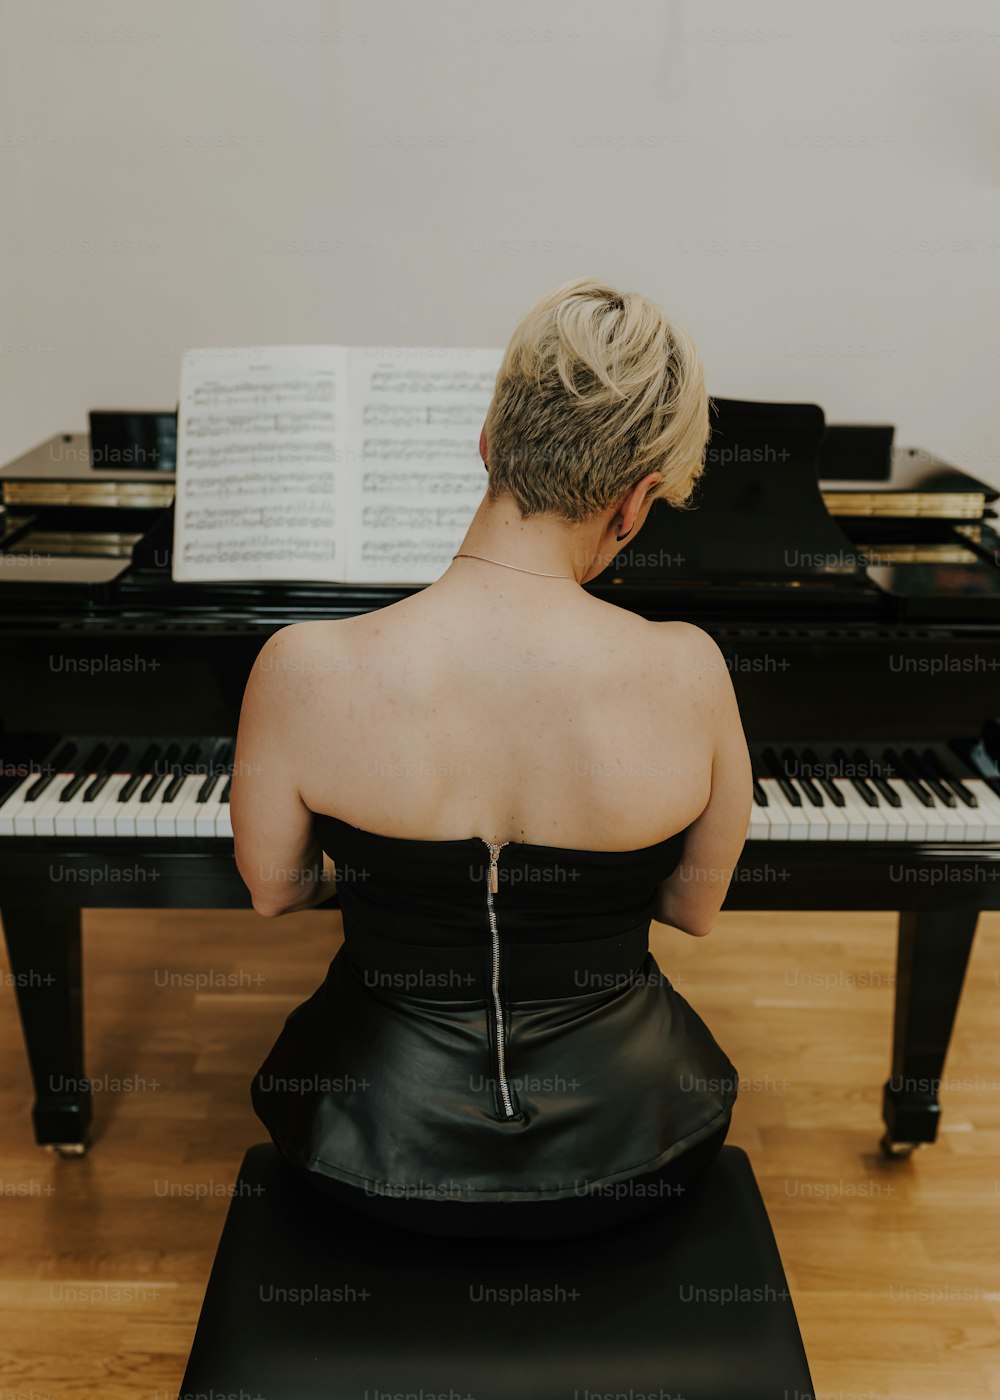 검은 드레스를 입은 여자가 피아노 앞에 앉아 있다